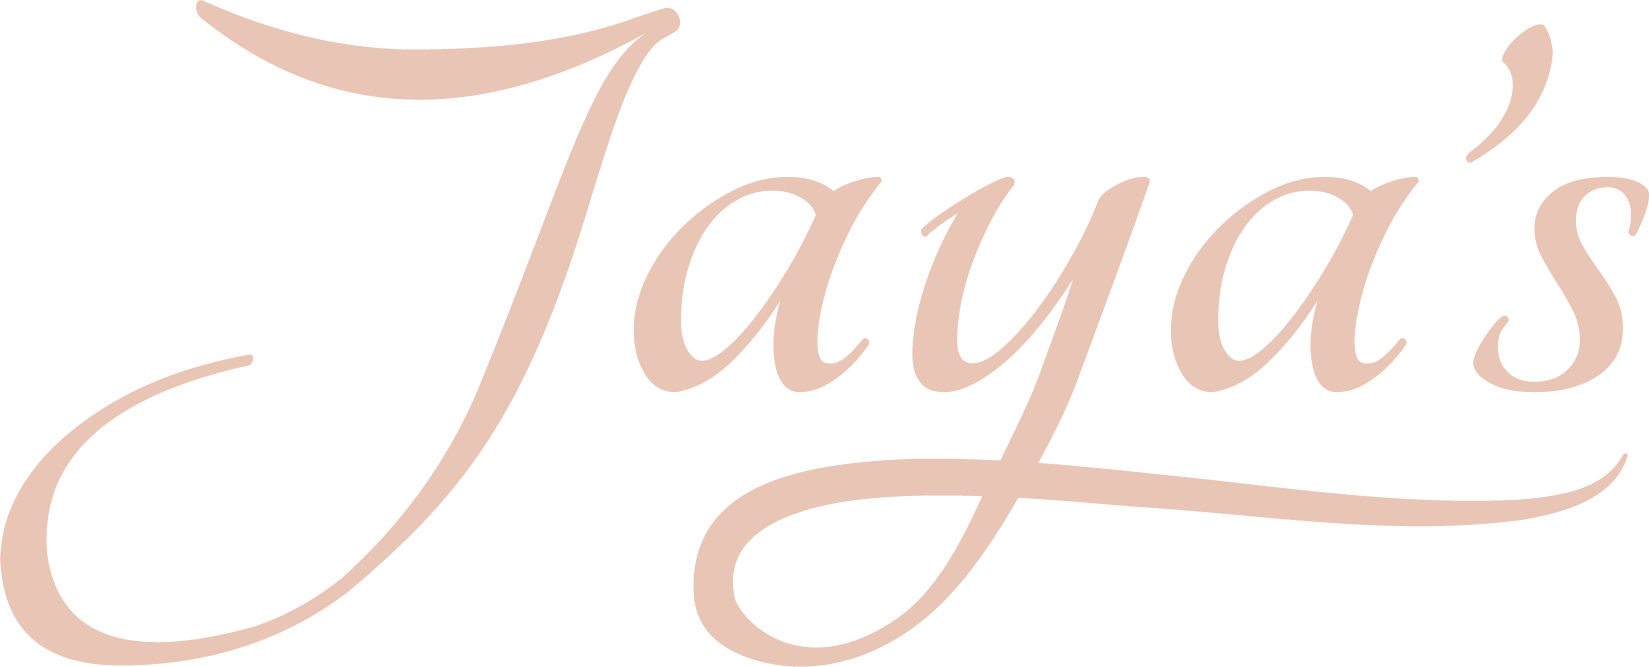 Jaya's logo